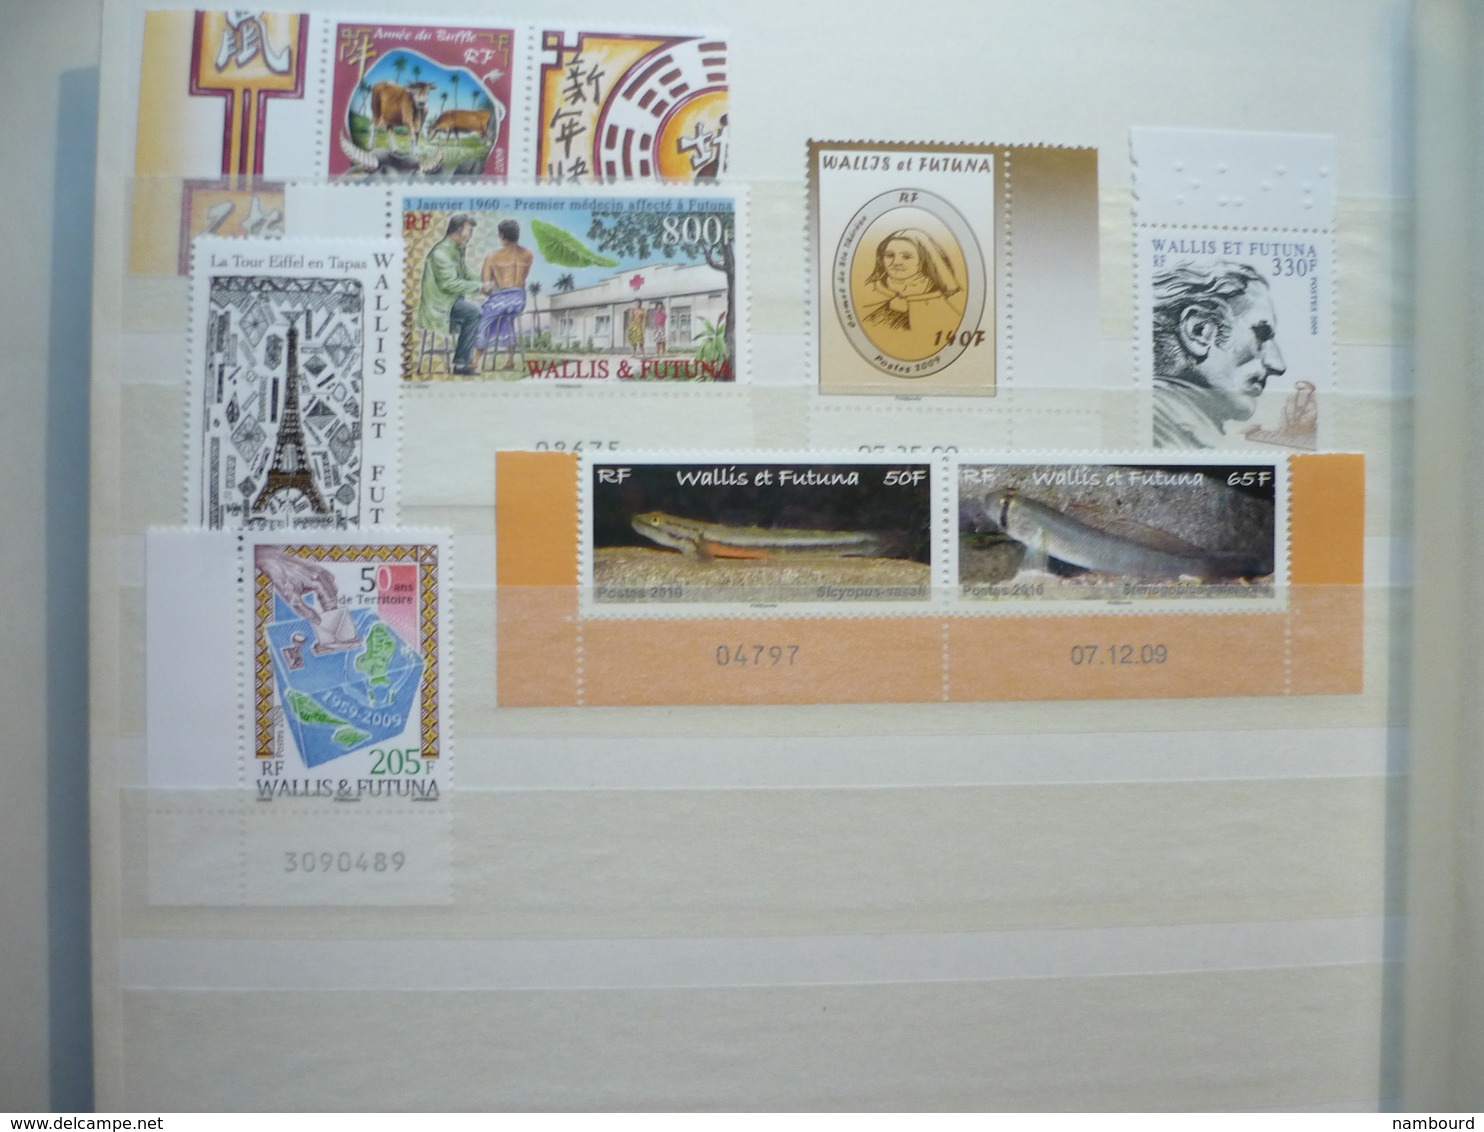 Collection avancée de timbres neufs de Wallis et Futuna du début des émissions à 2009